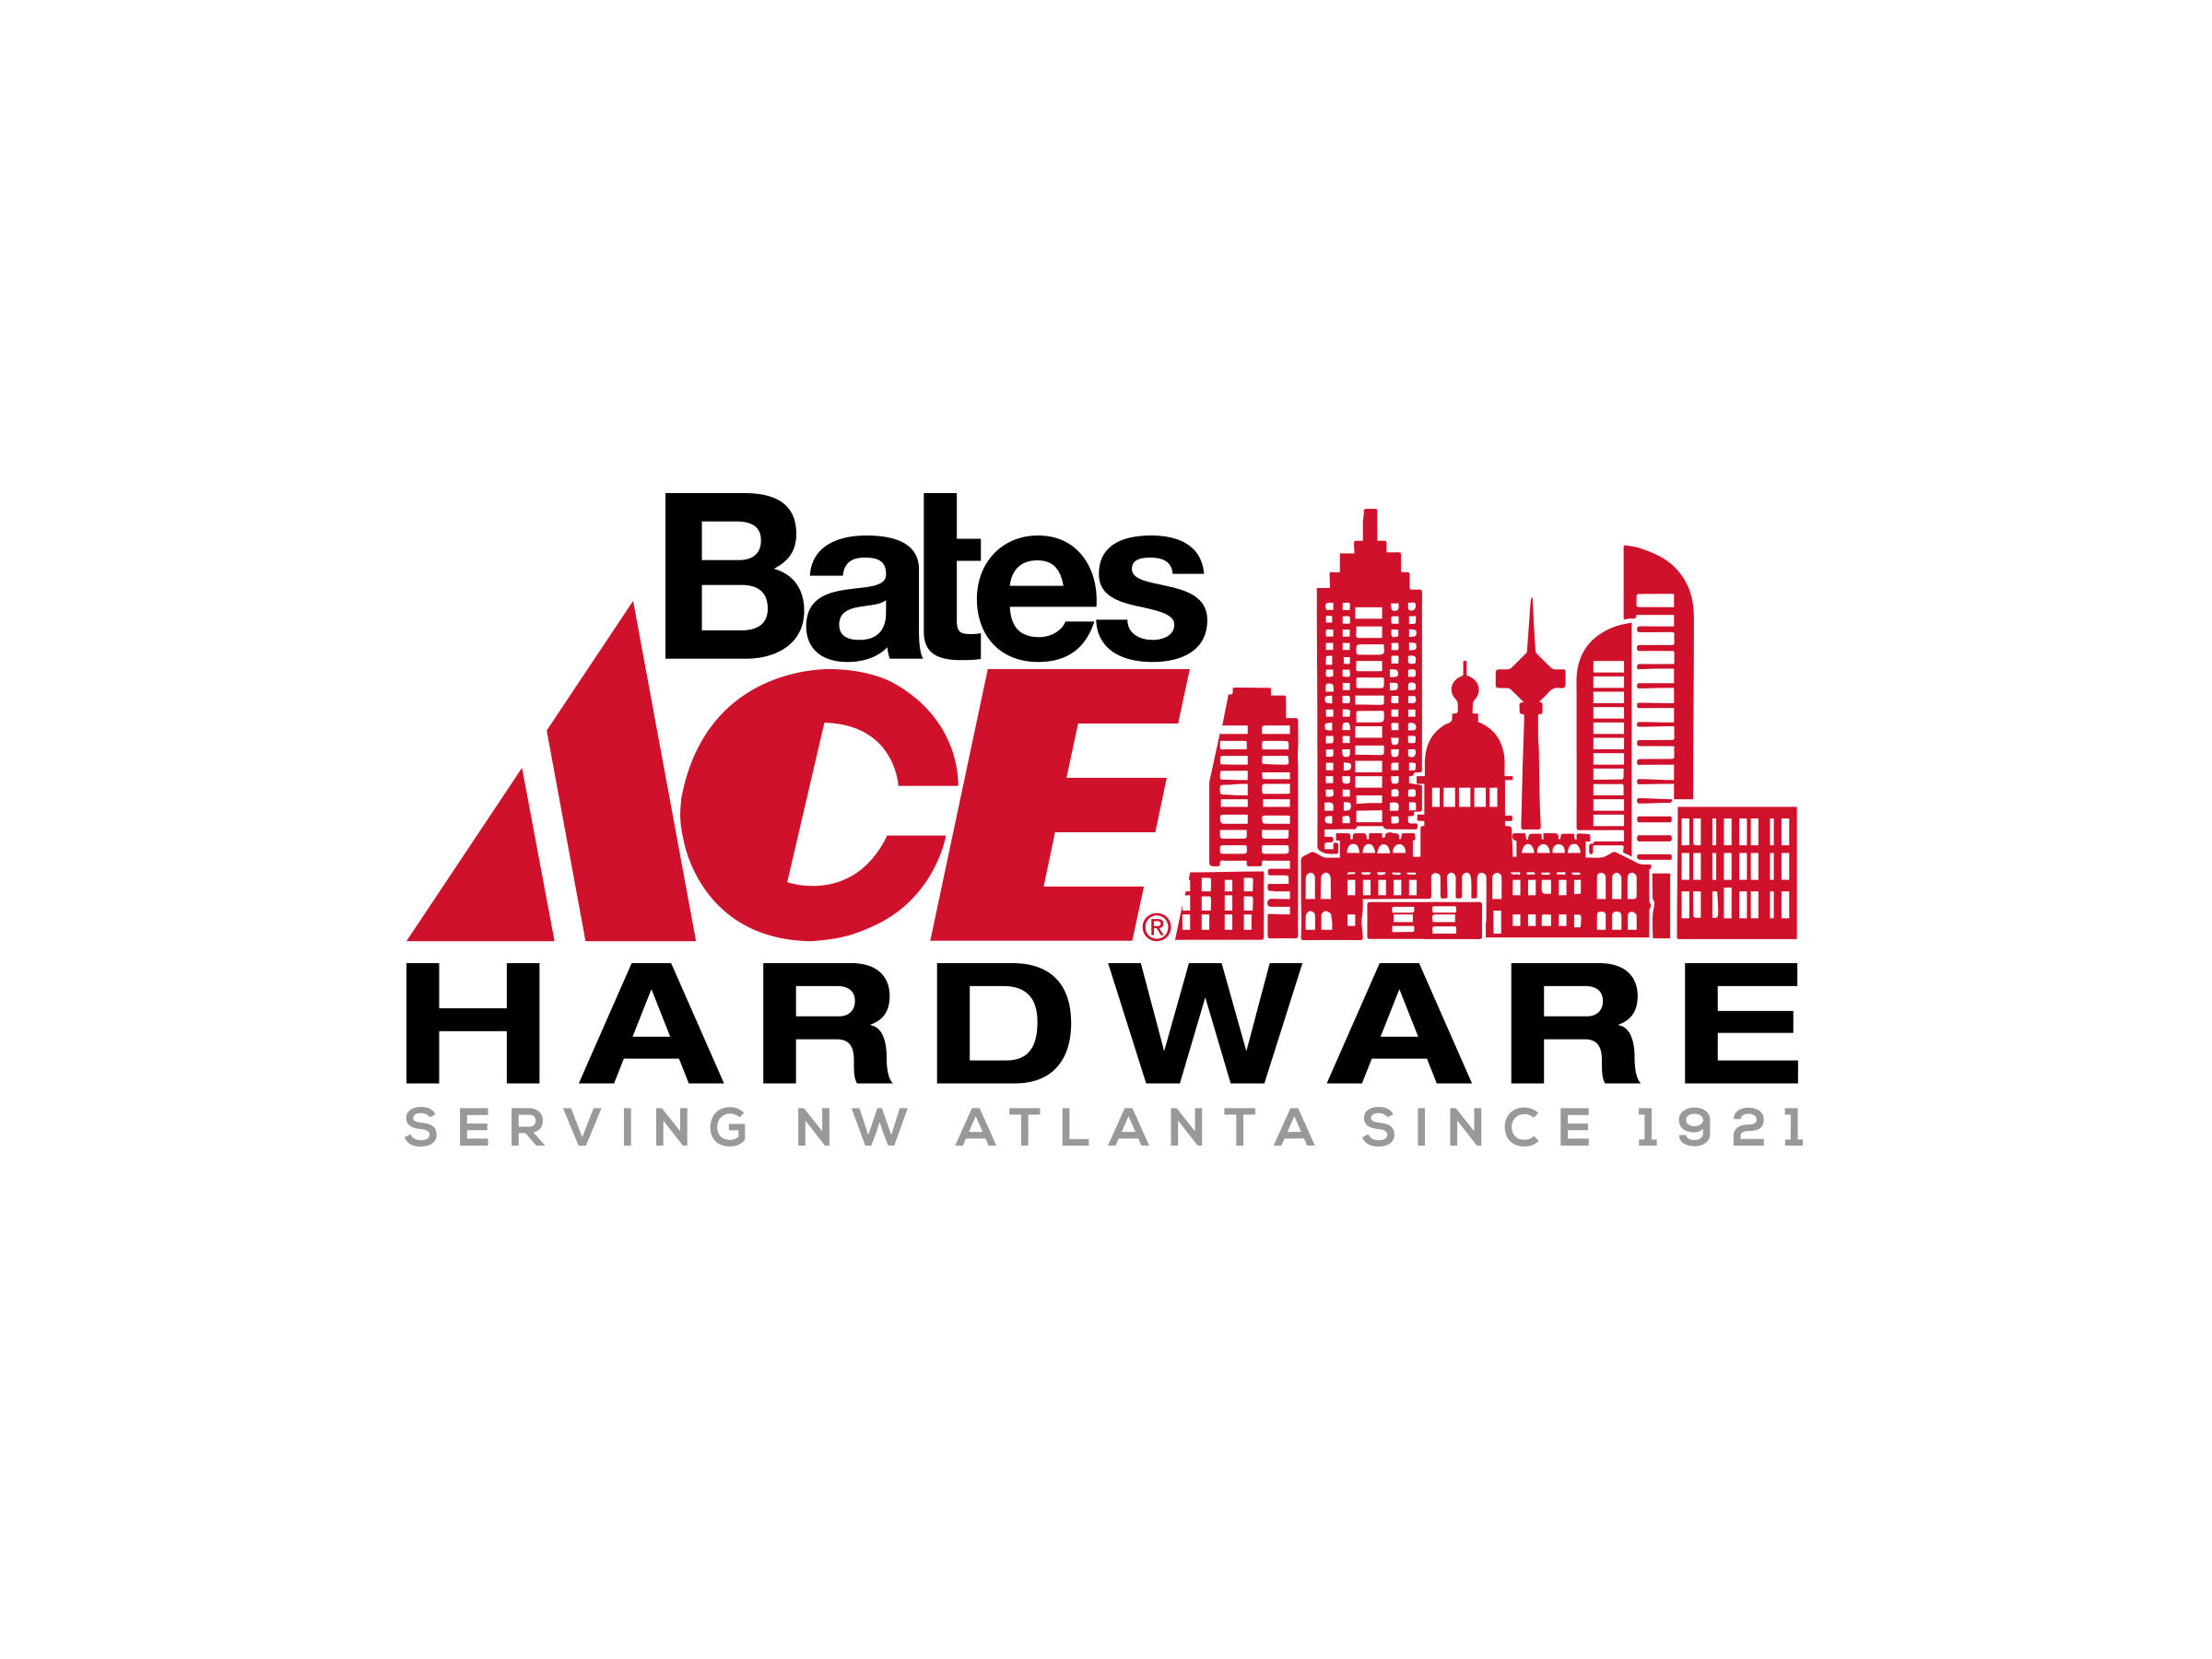 Bates Ace Ecommerce